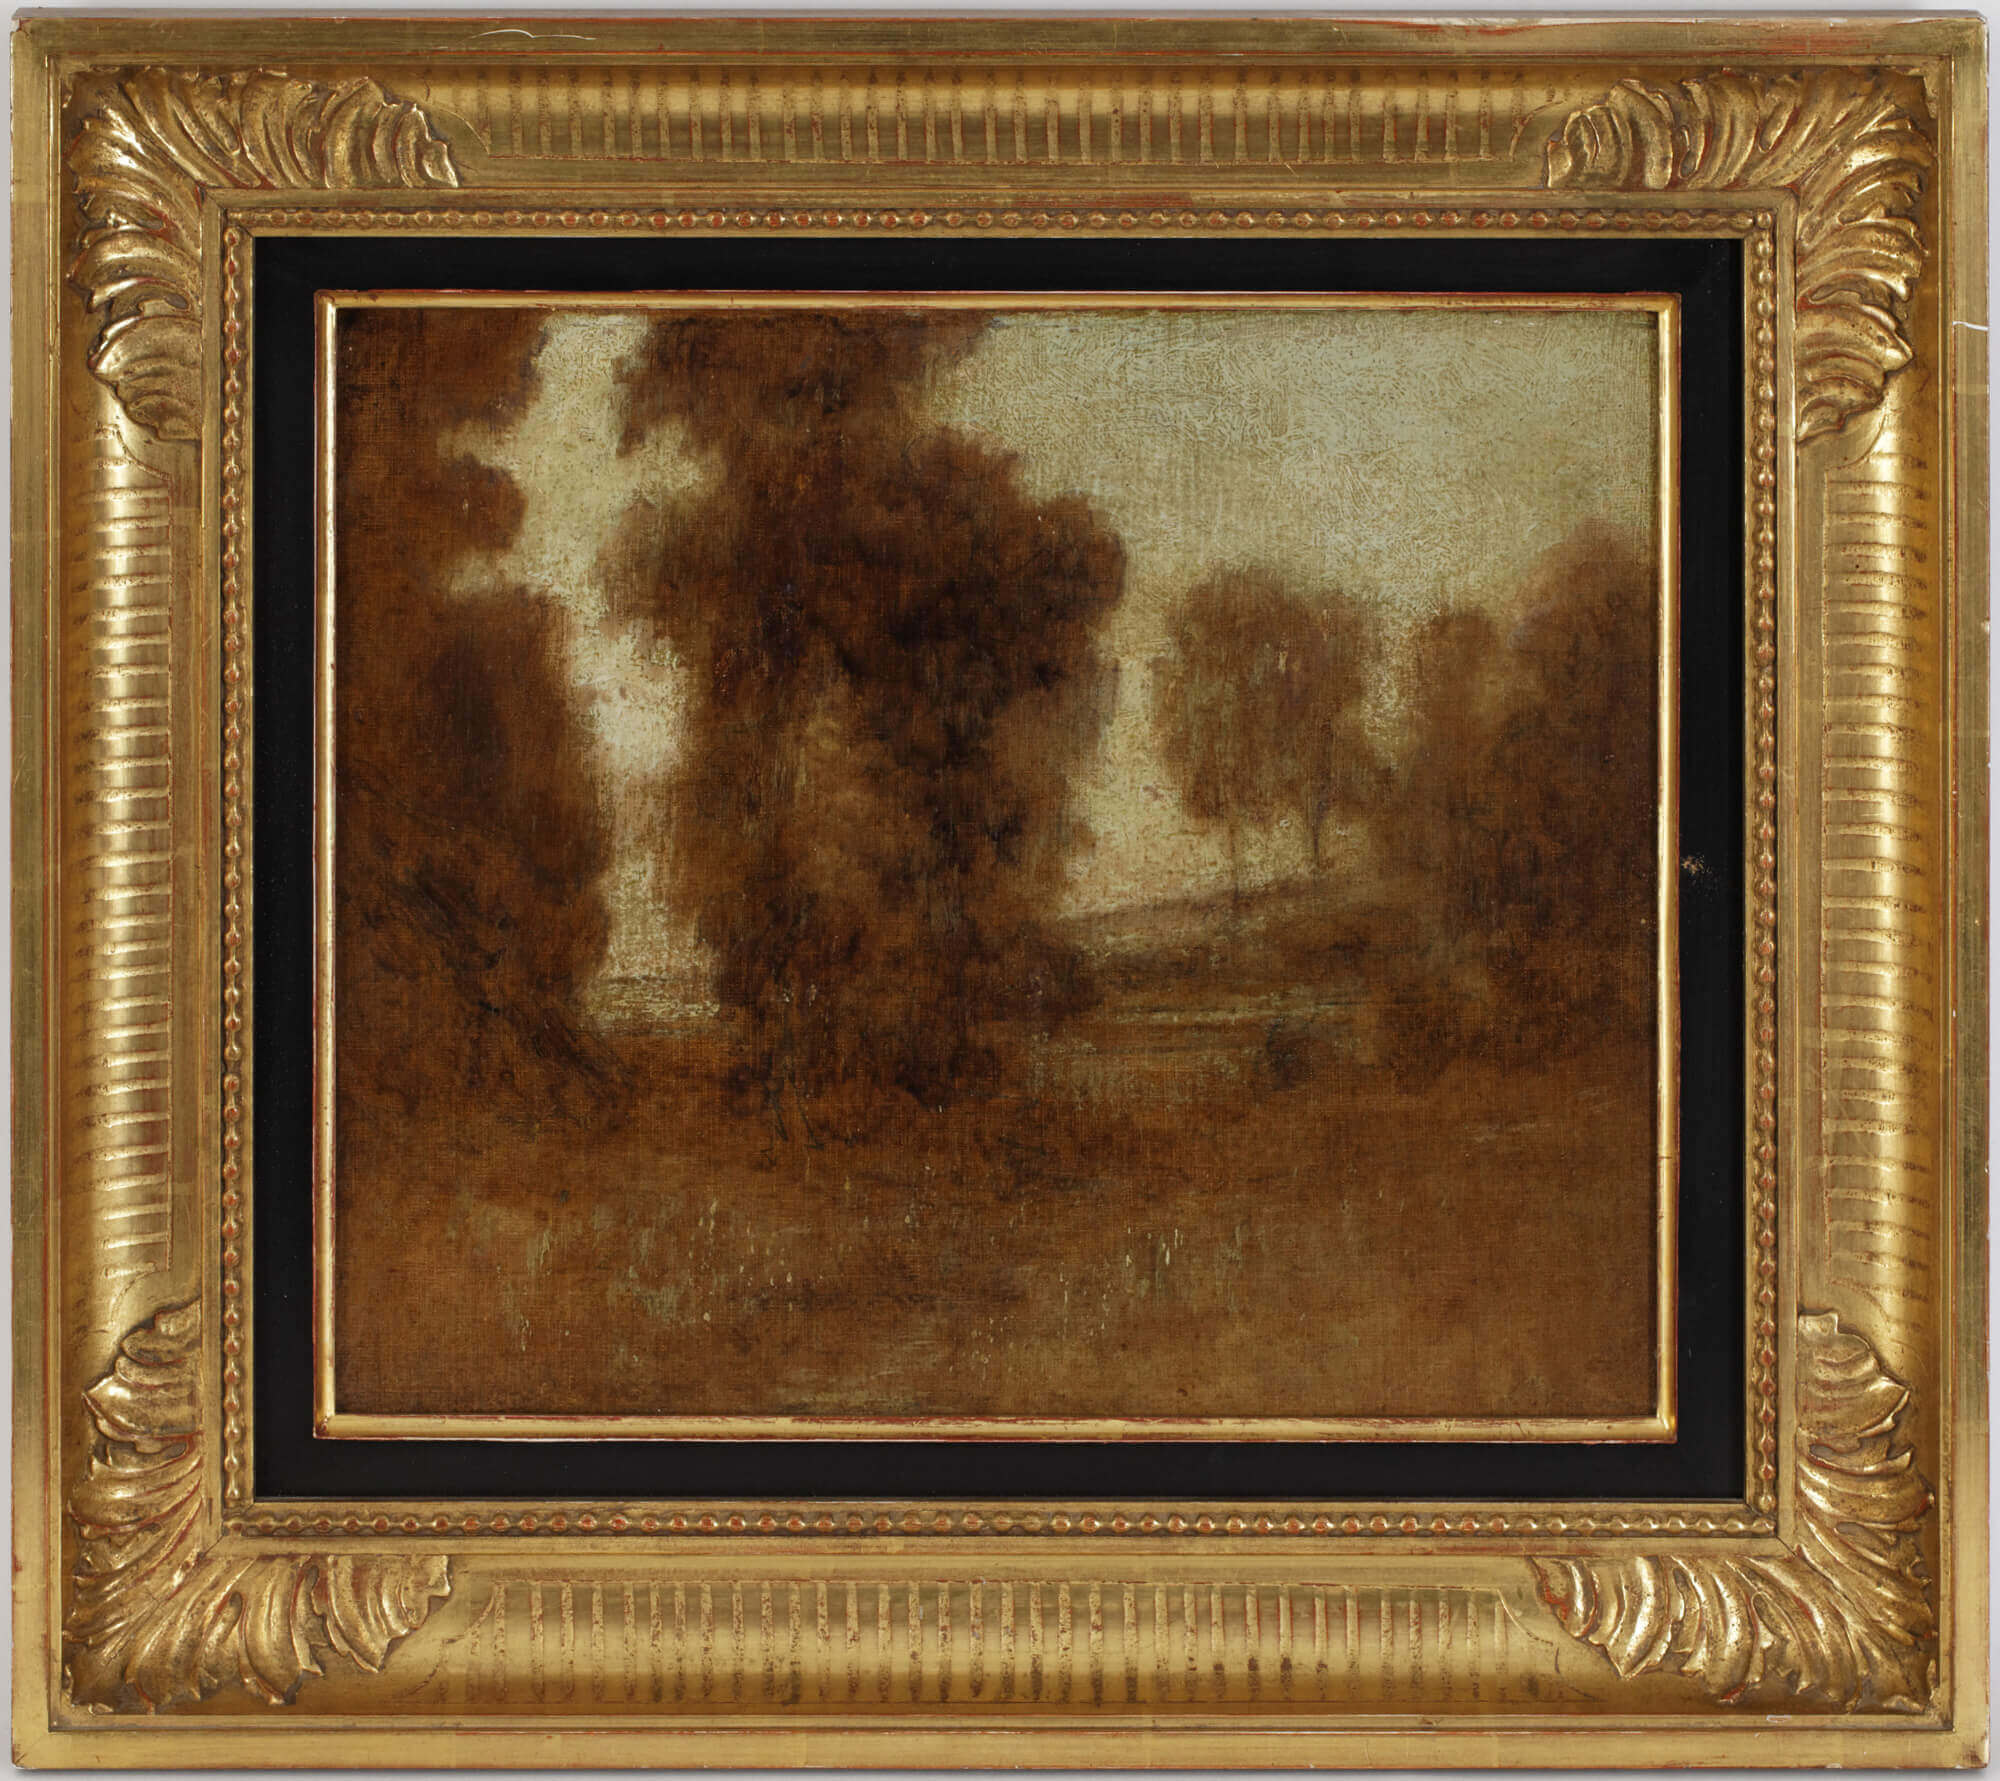 Landschaftsgemälde von Eugène Carrière. Dargestellt sind Bäume und Wiesen. Alles in monochromer Malweise